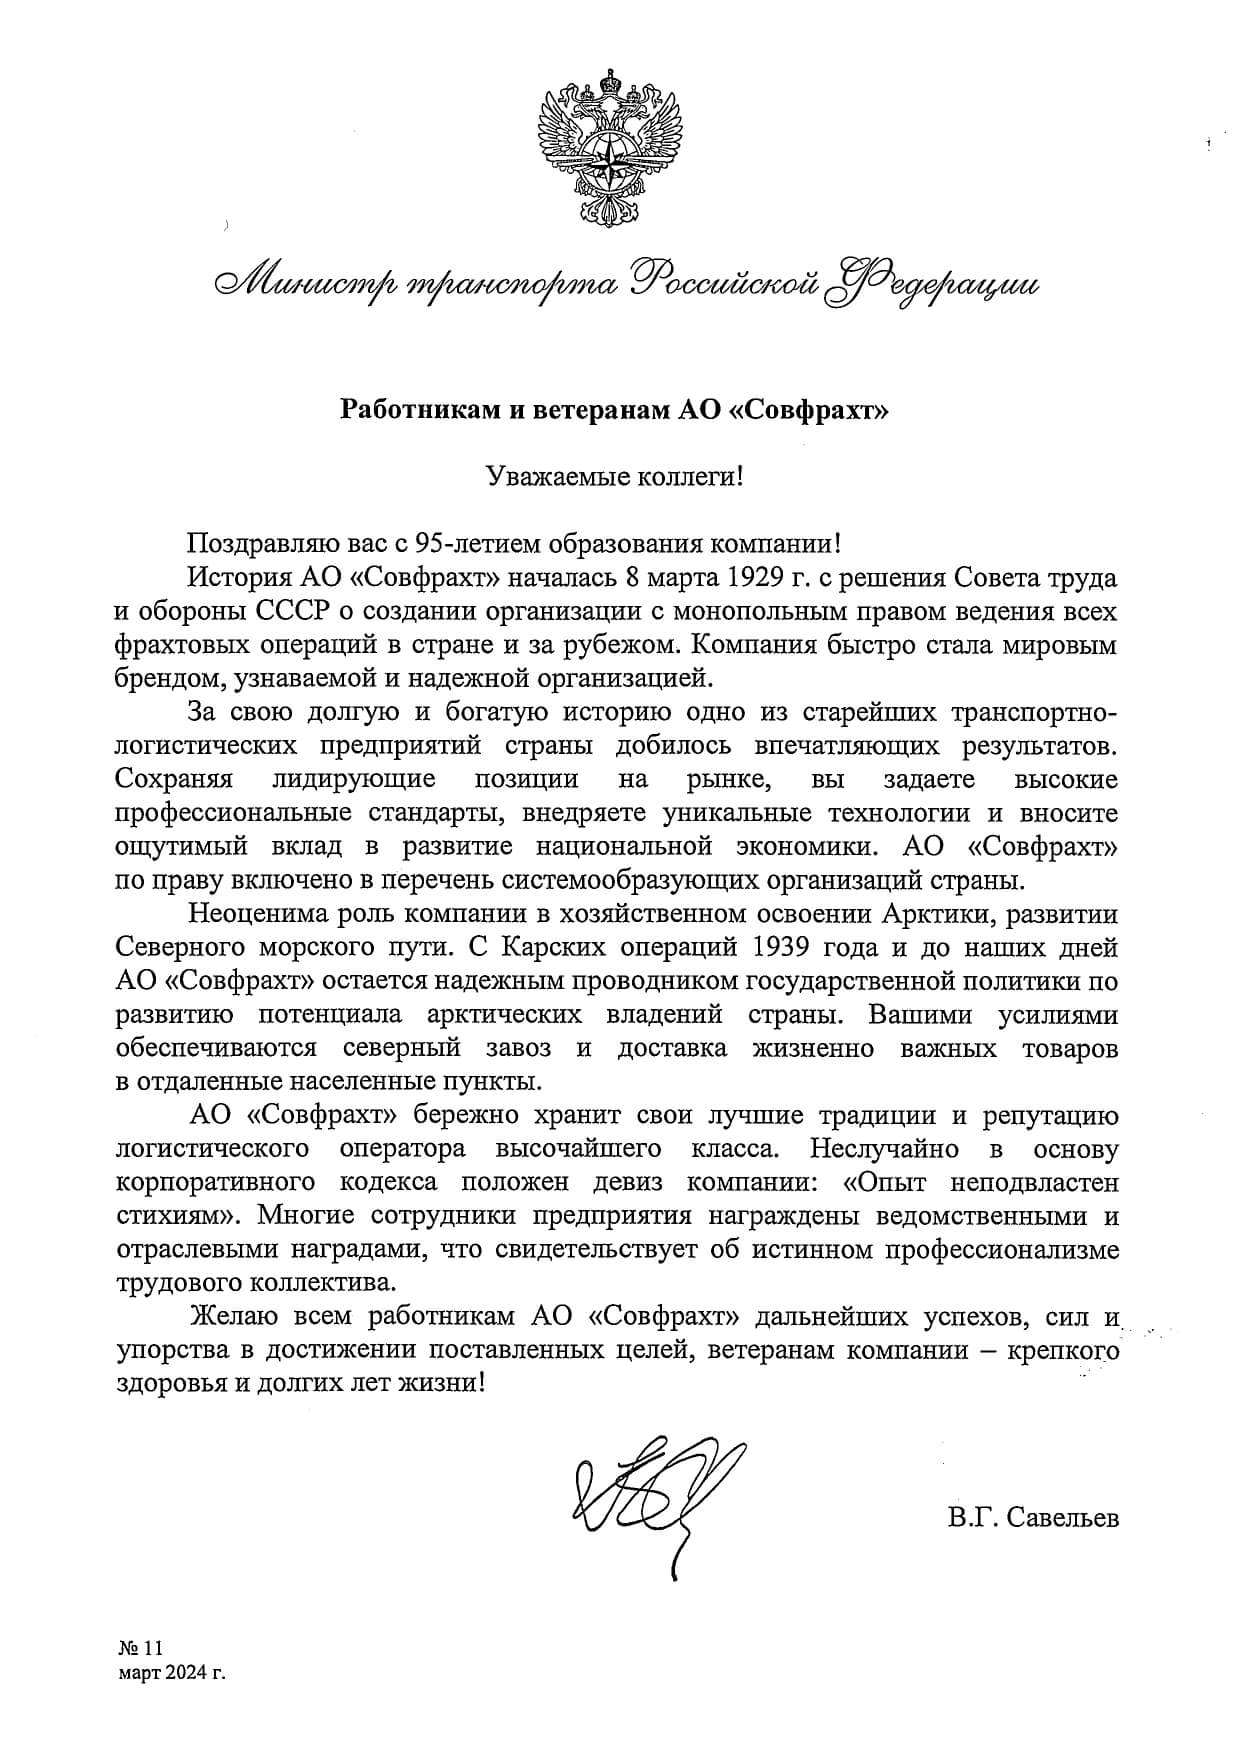 Поздравление от Министра транспорта РФ Савельева В.Г. с 95-летием основания АО «Совфрахт»